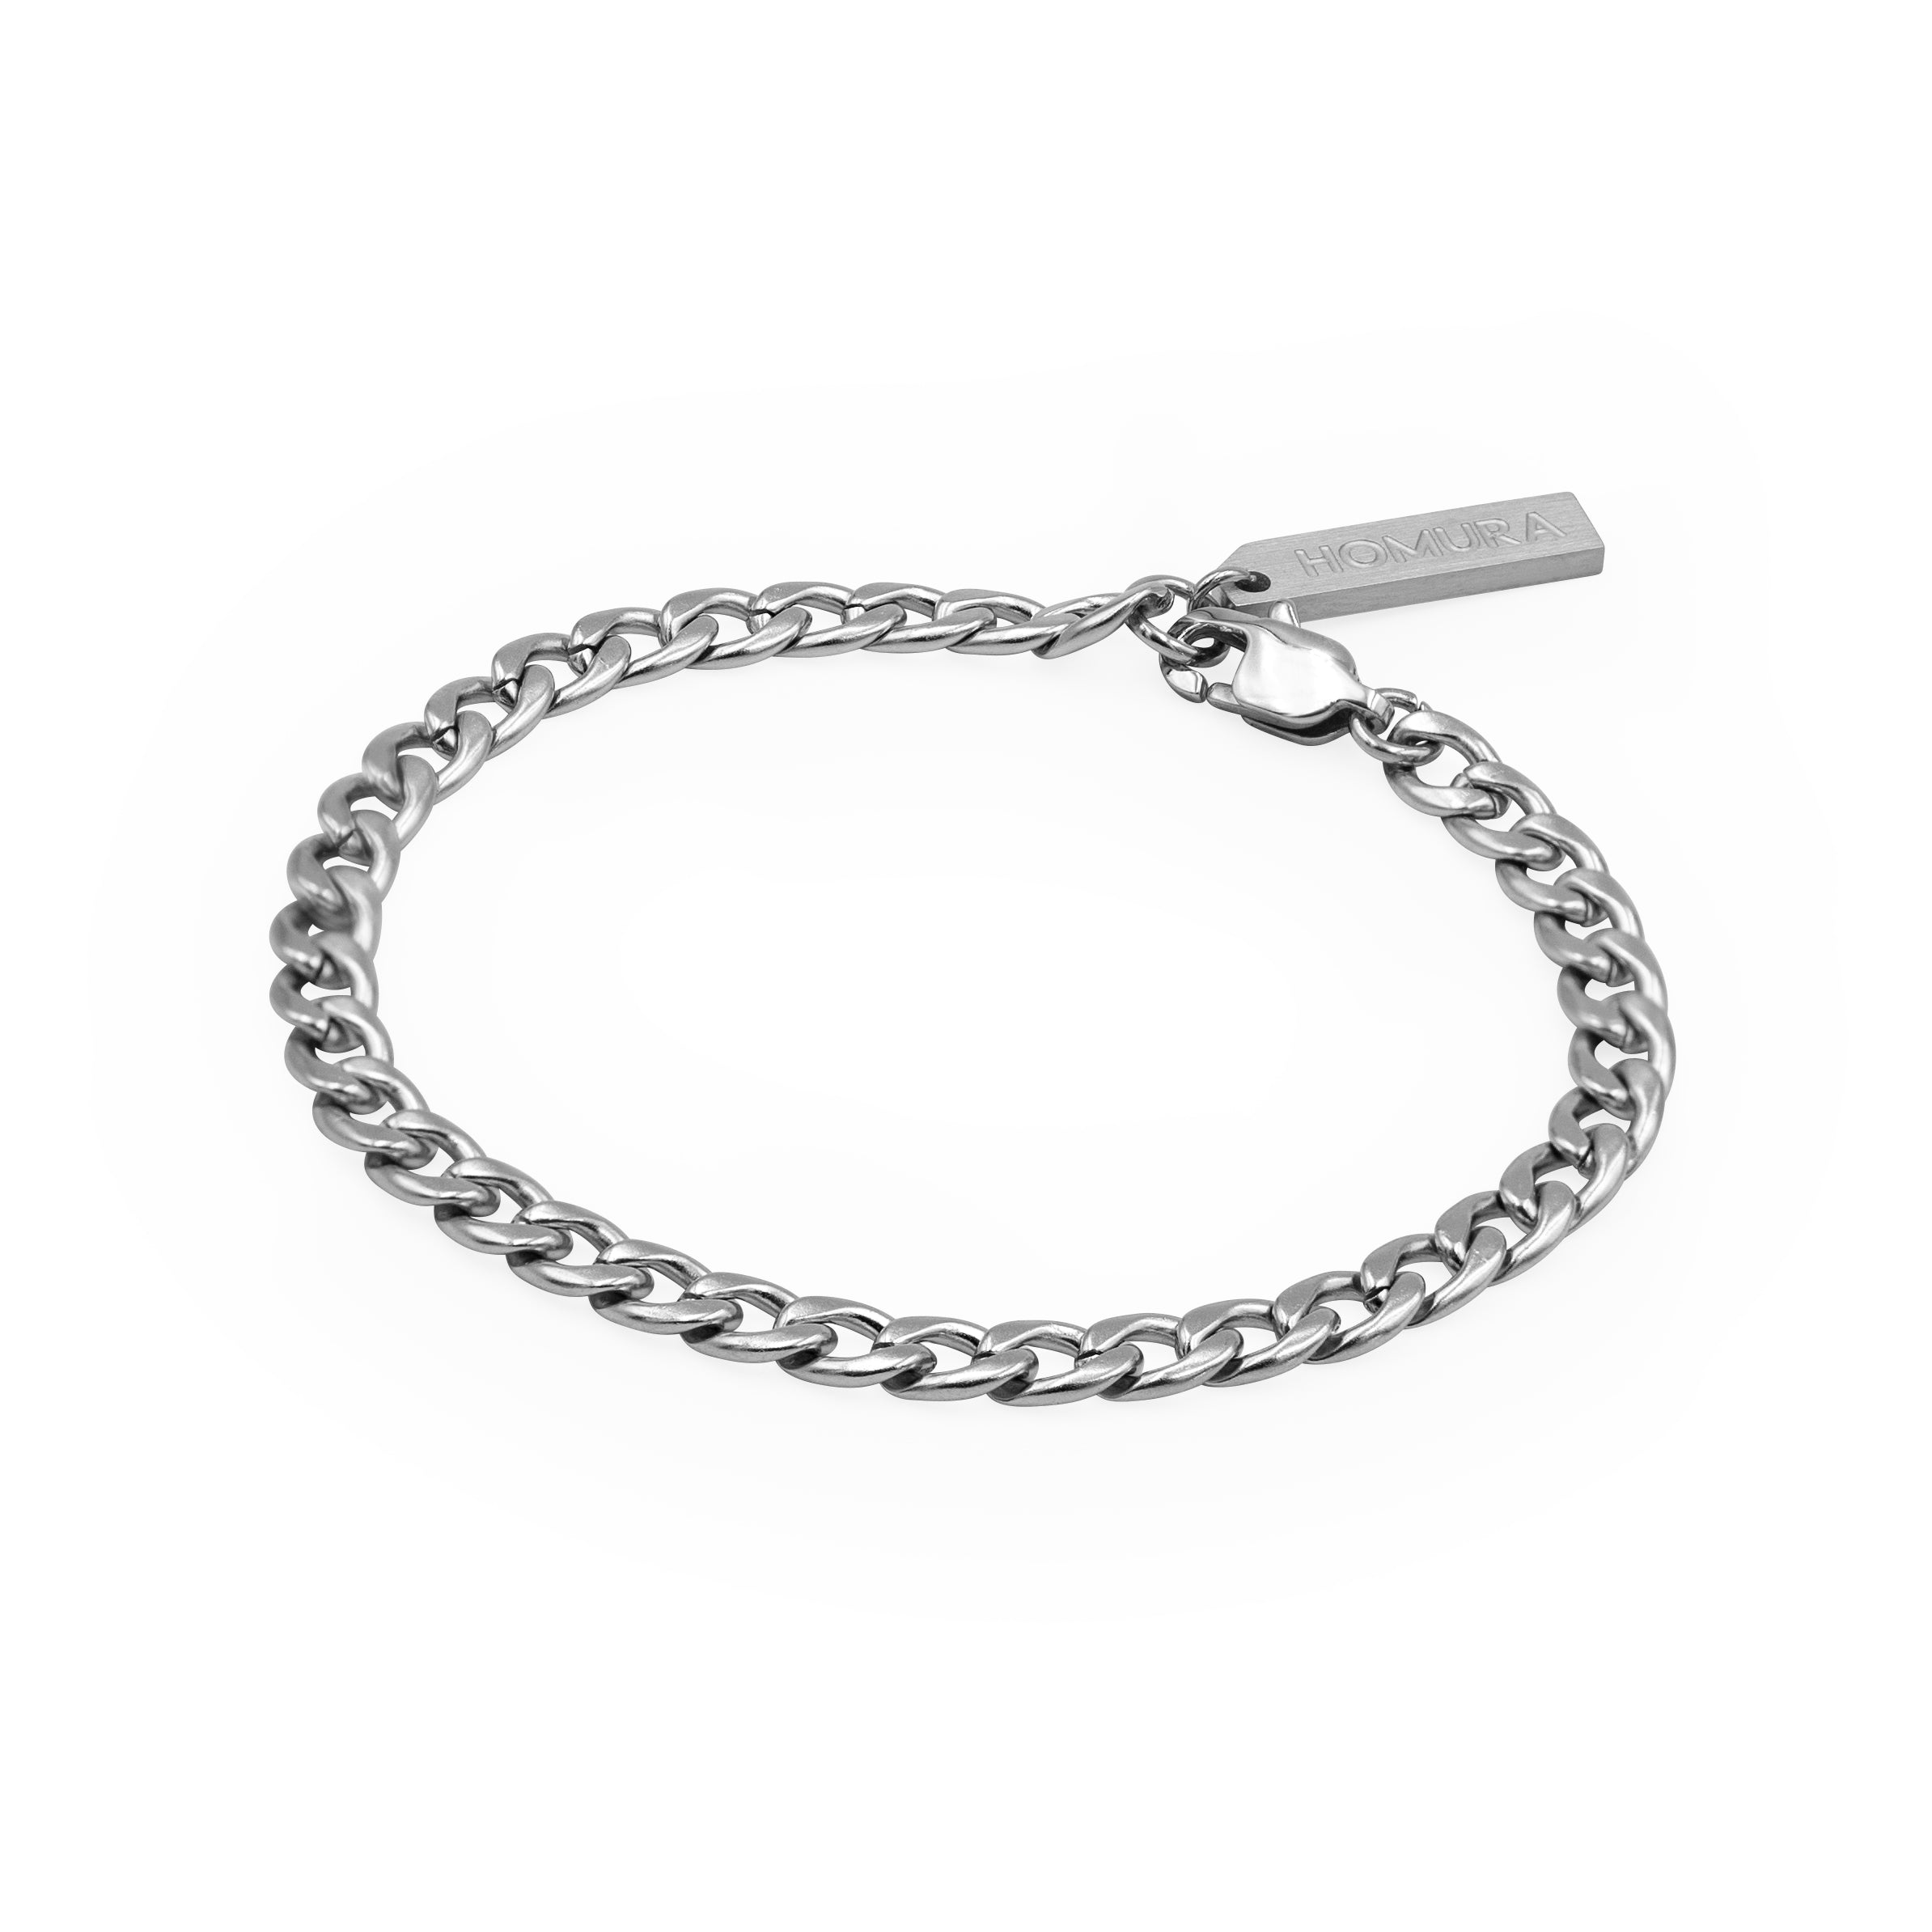 Cuff & Chain Bracelets